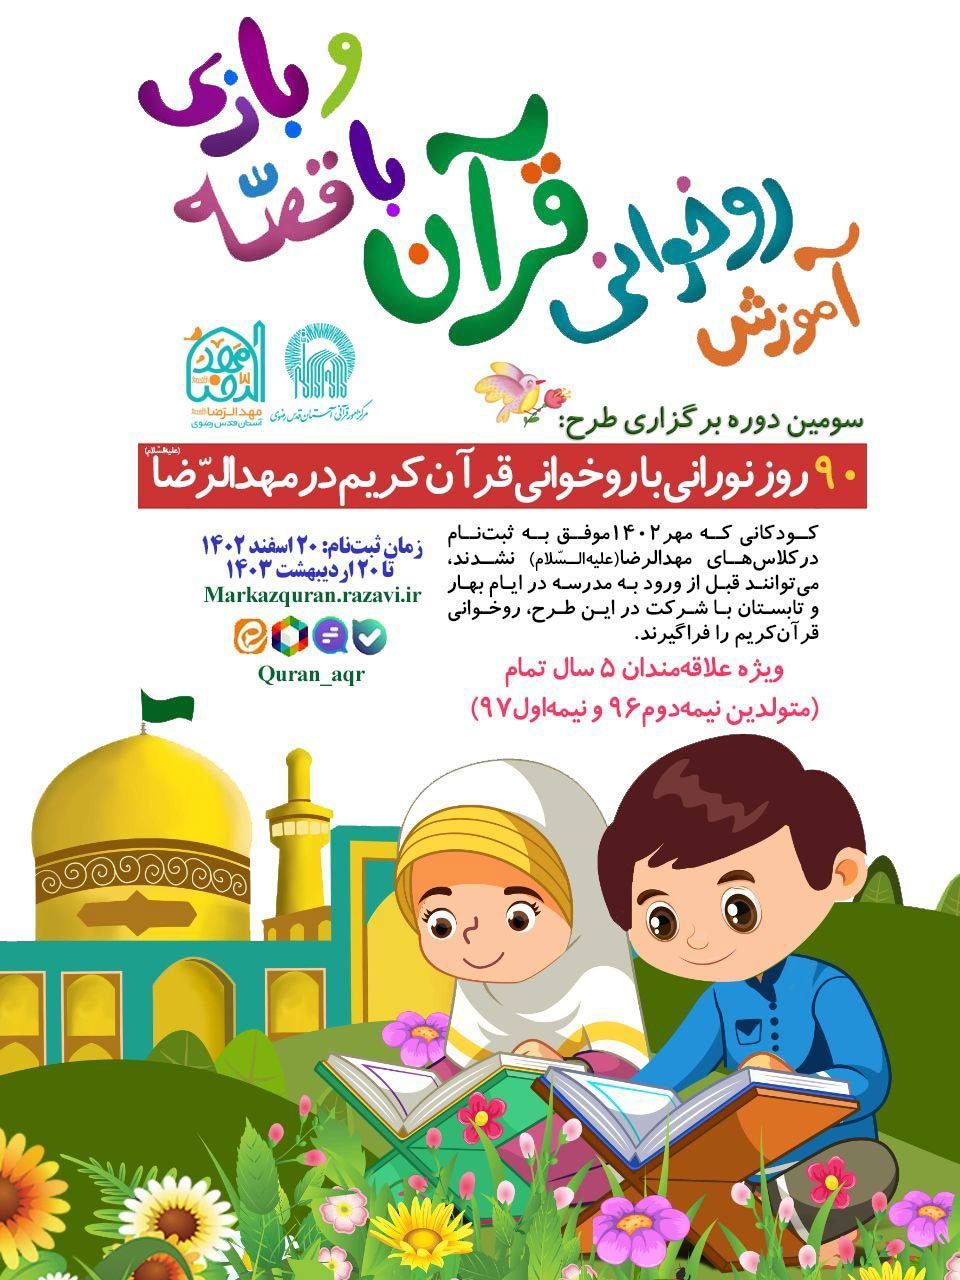 آموزش روخوانی قرآن با بازی و قصه در مهدالرضا حرم امام رضا (ع)